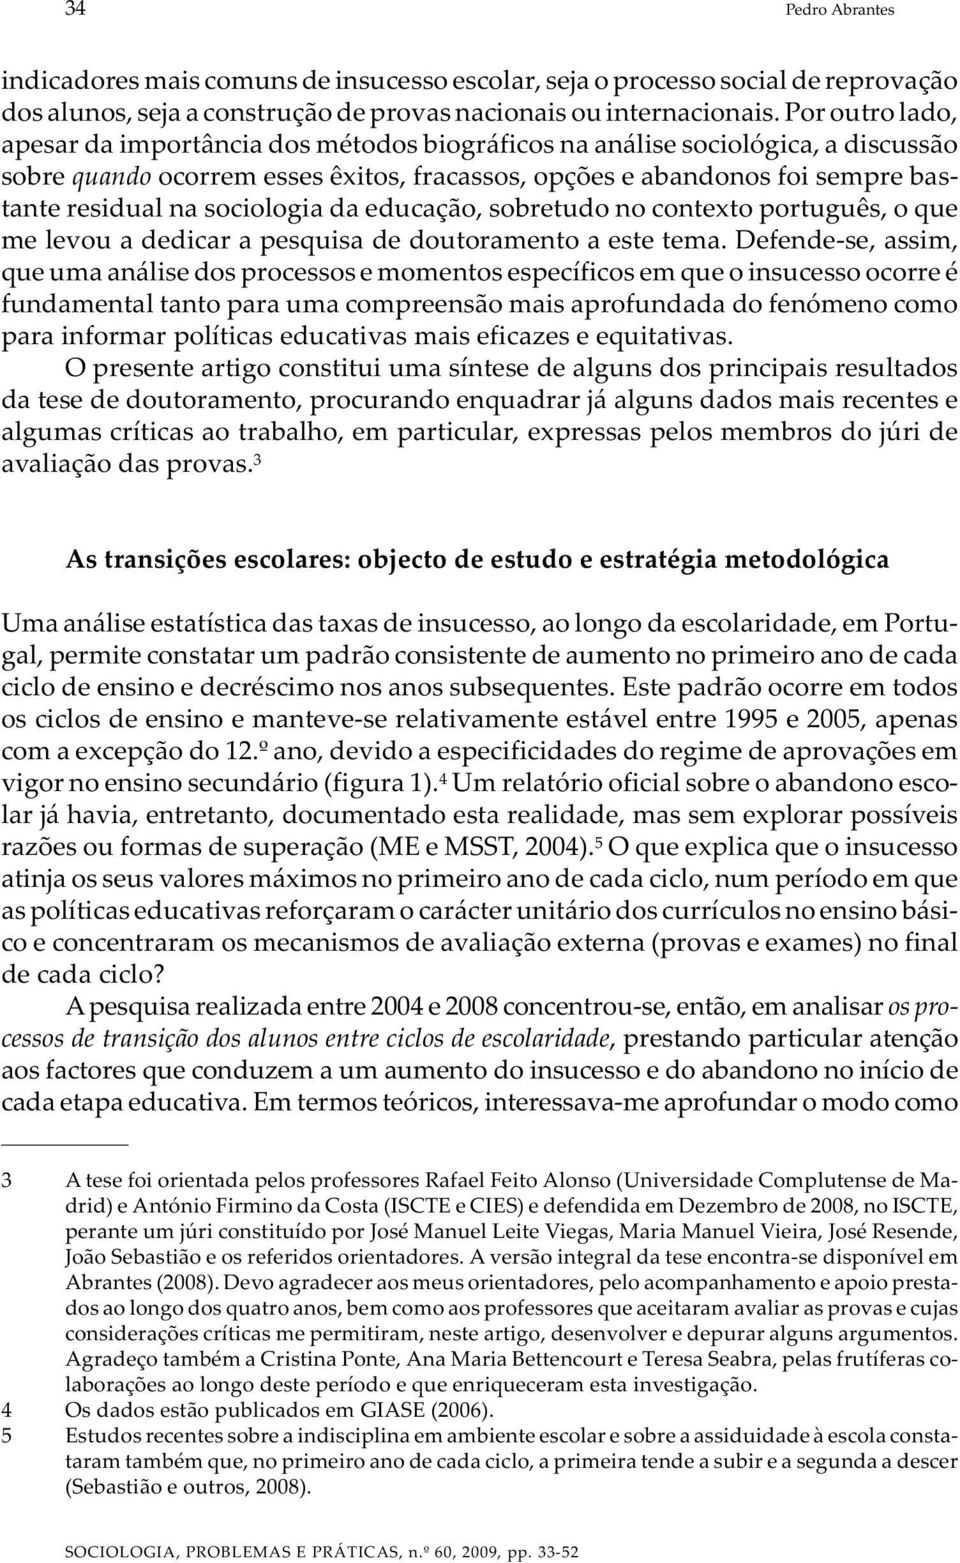 sociologia da educação, sobretudo no contexto português, o que me levou a dedicar a pesquisa de doutoramento a este tema.